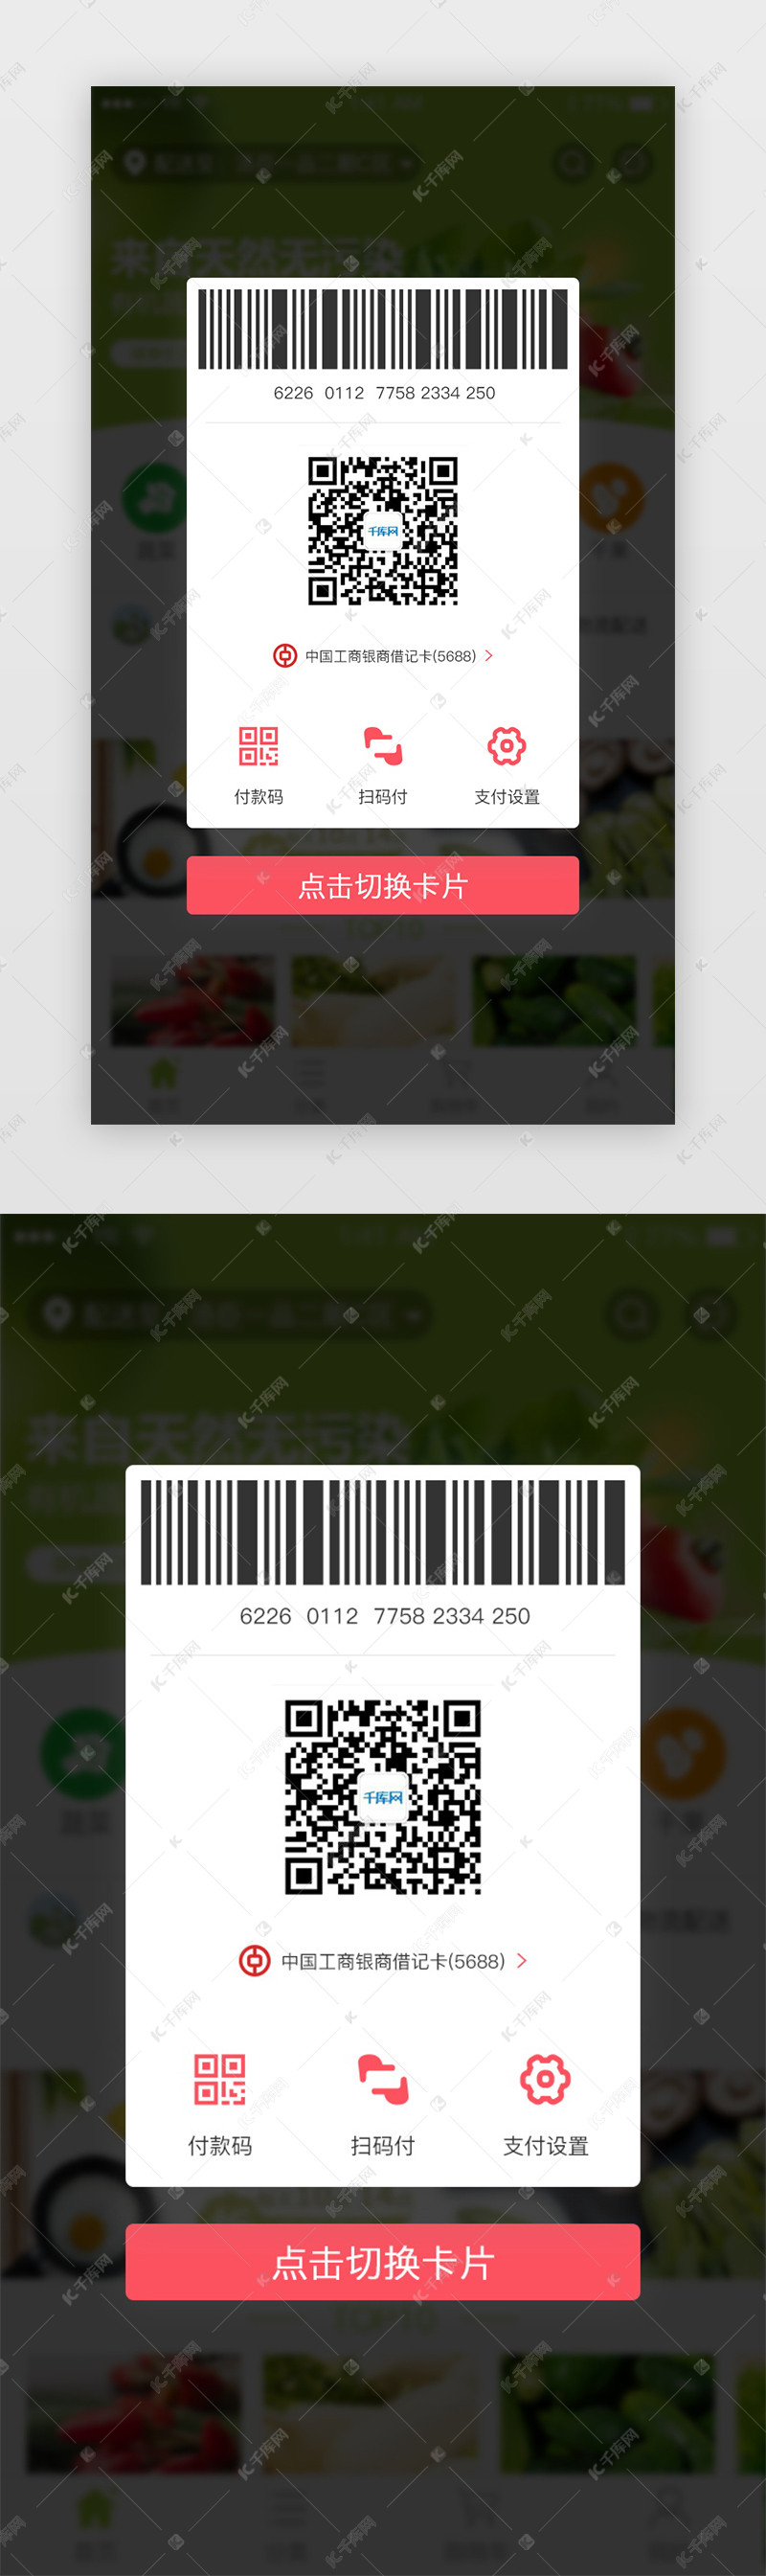 付款码信息展示界面卡片切换弹出框弹窗